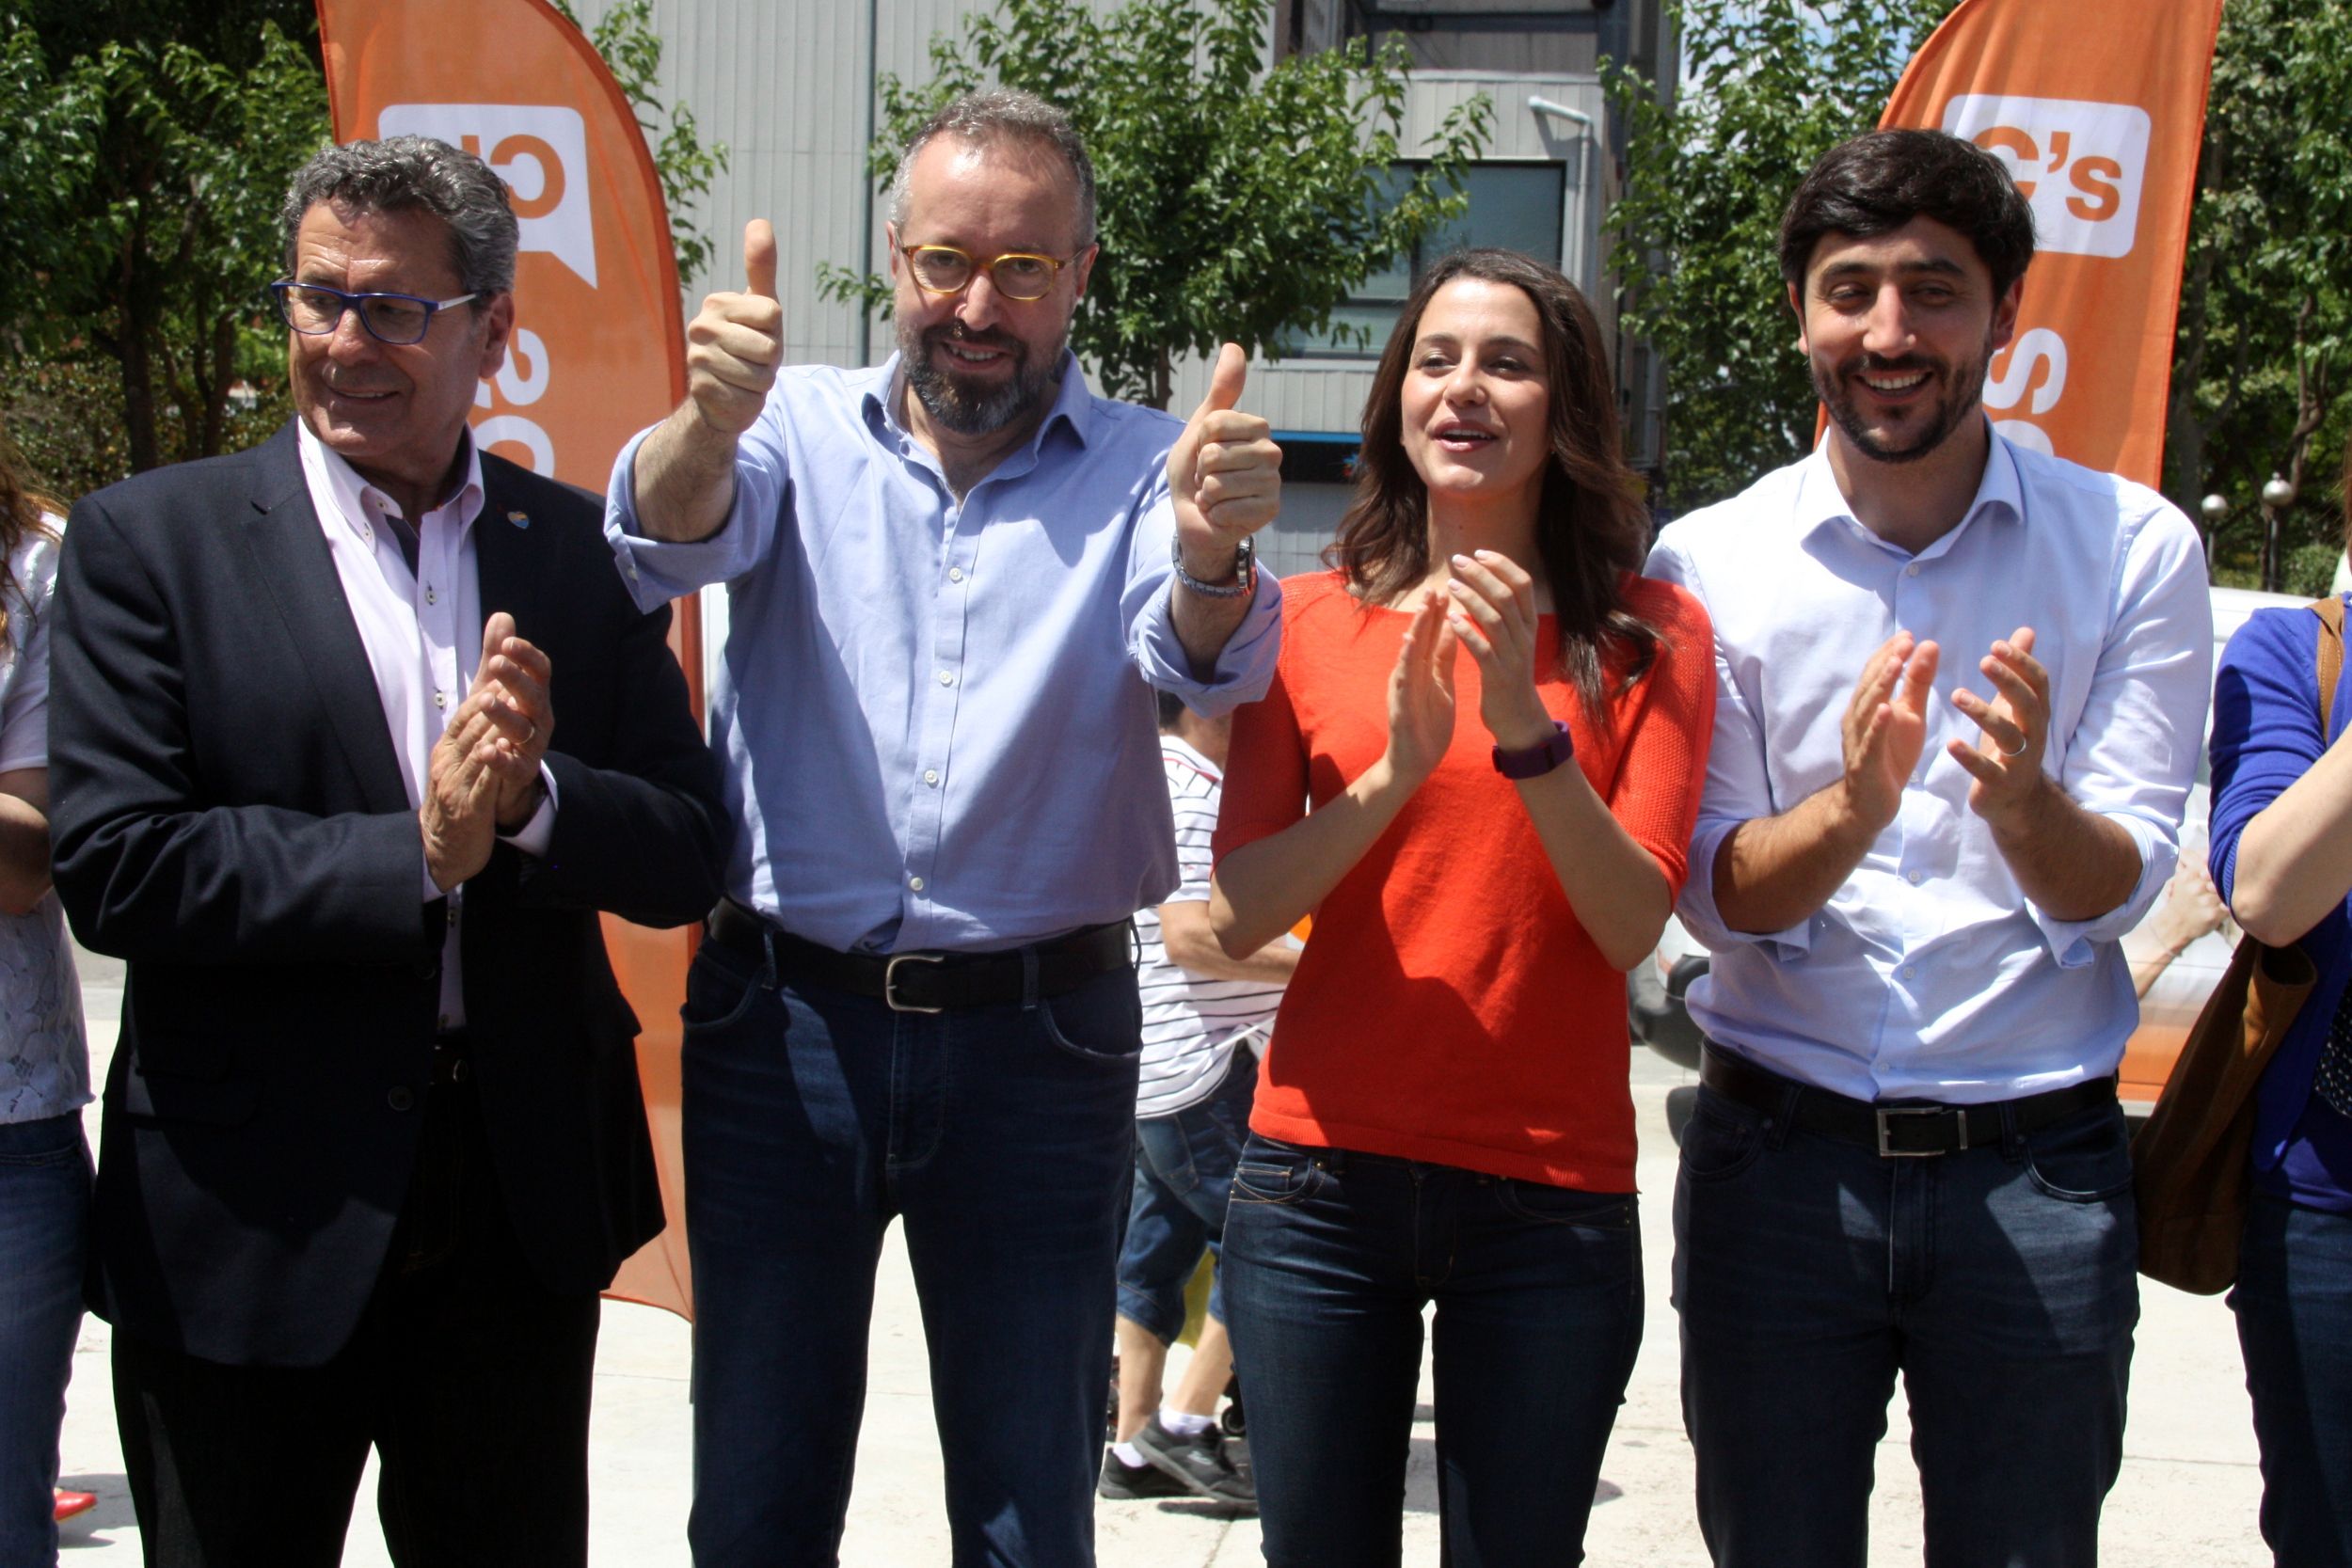 Girauta tensa la campanya: “El combinat C’s-Rajoy no existeix”